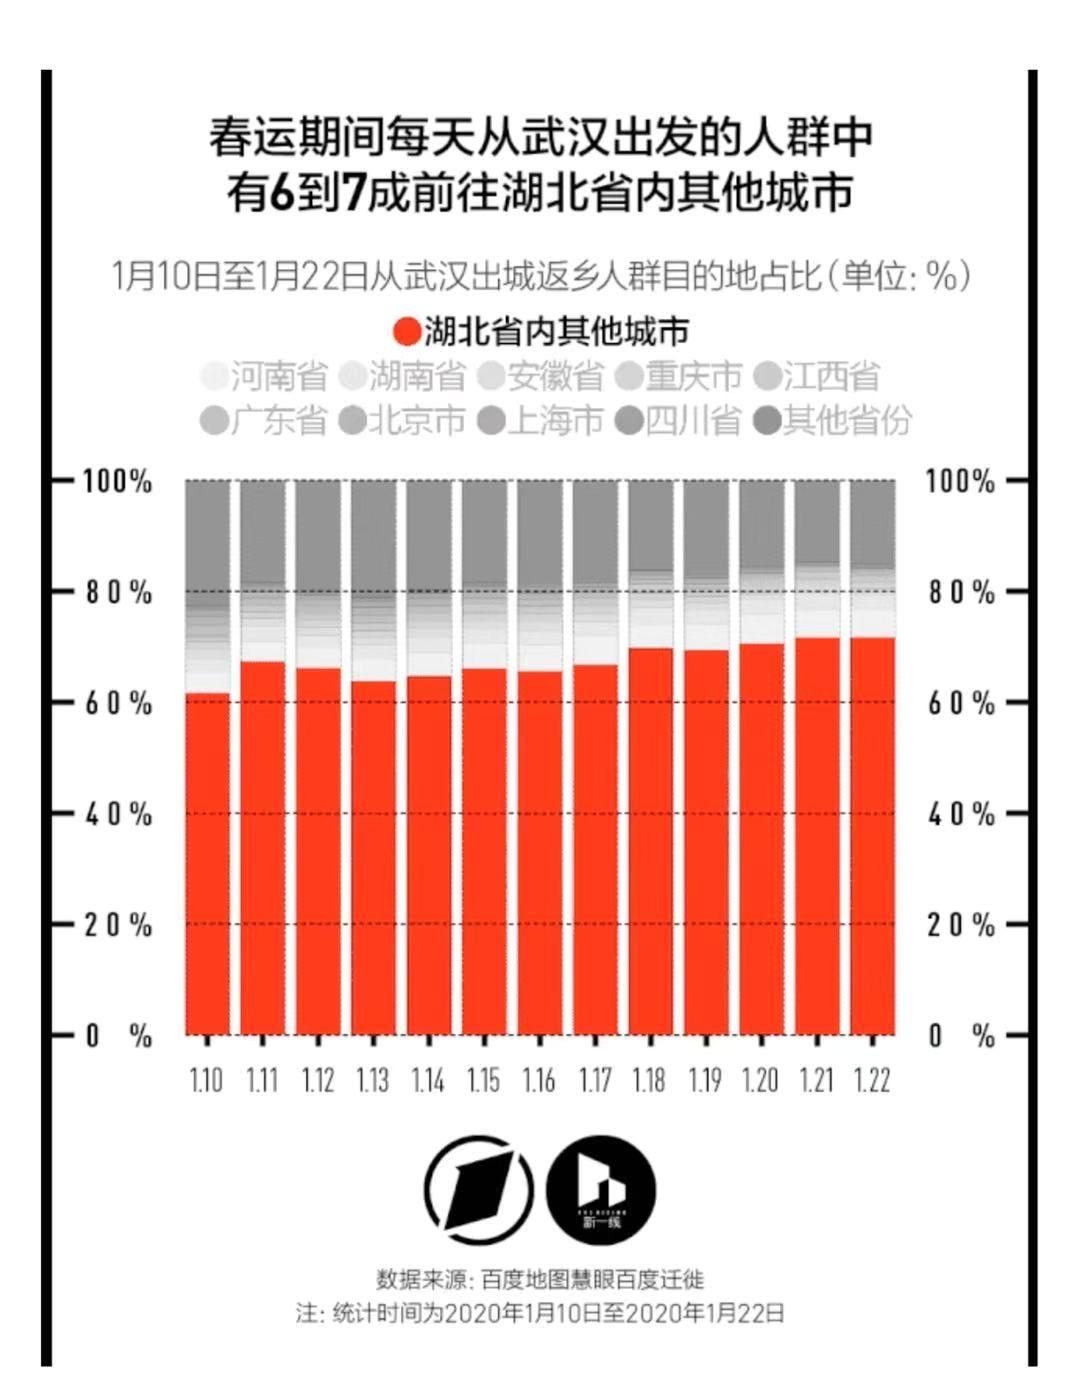 湖北武汉新冠病毒肺炎疫情核心事件一览 (组图) - 1+新闻网